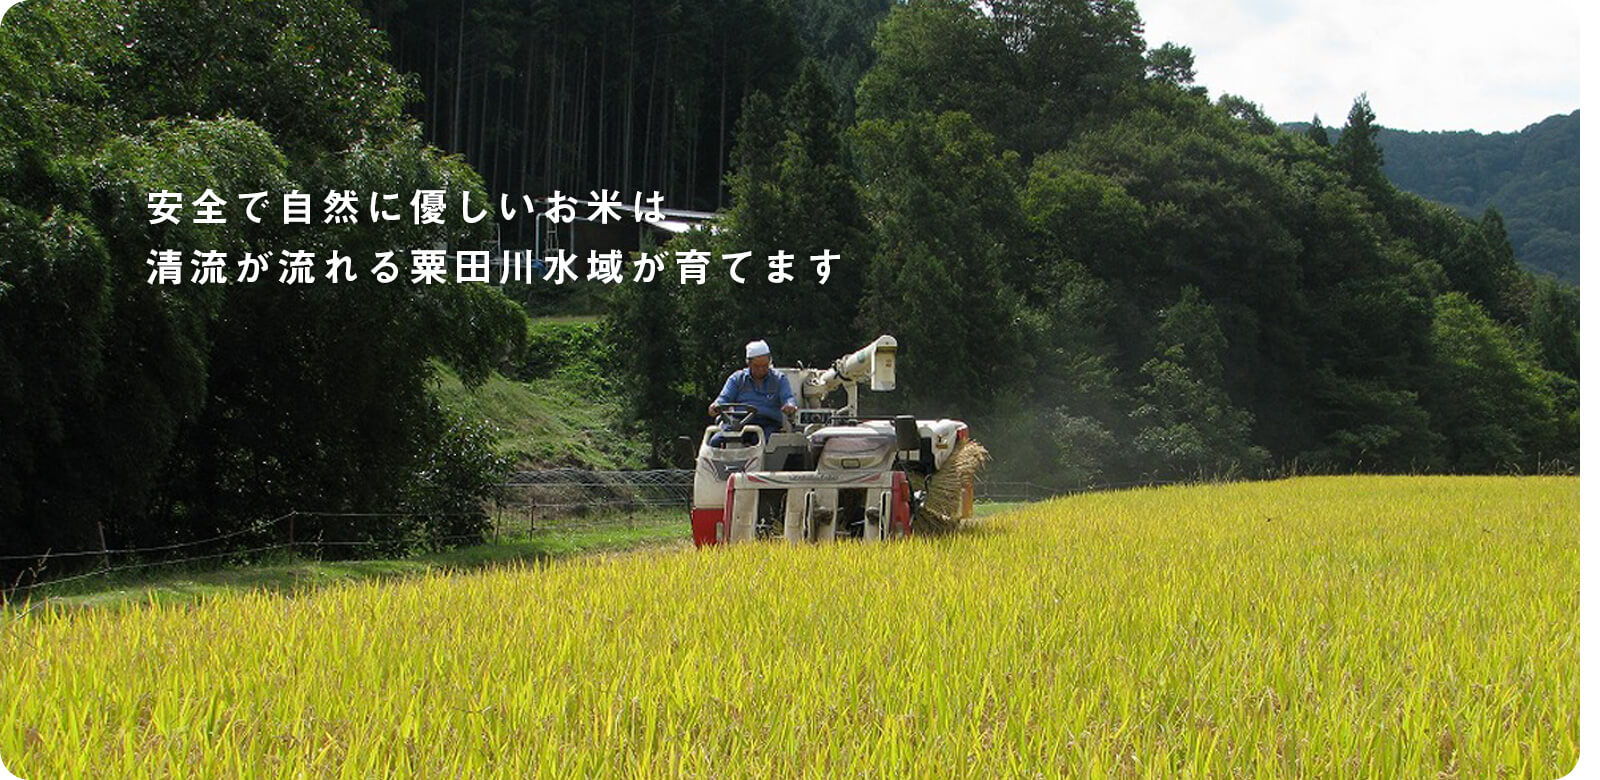 あいがも米の収穫風景